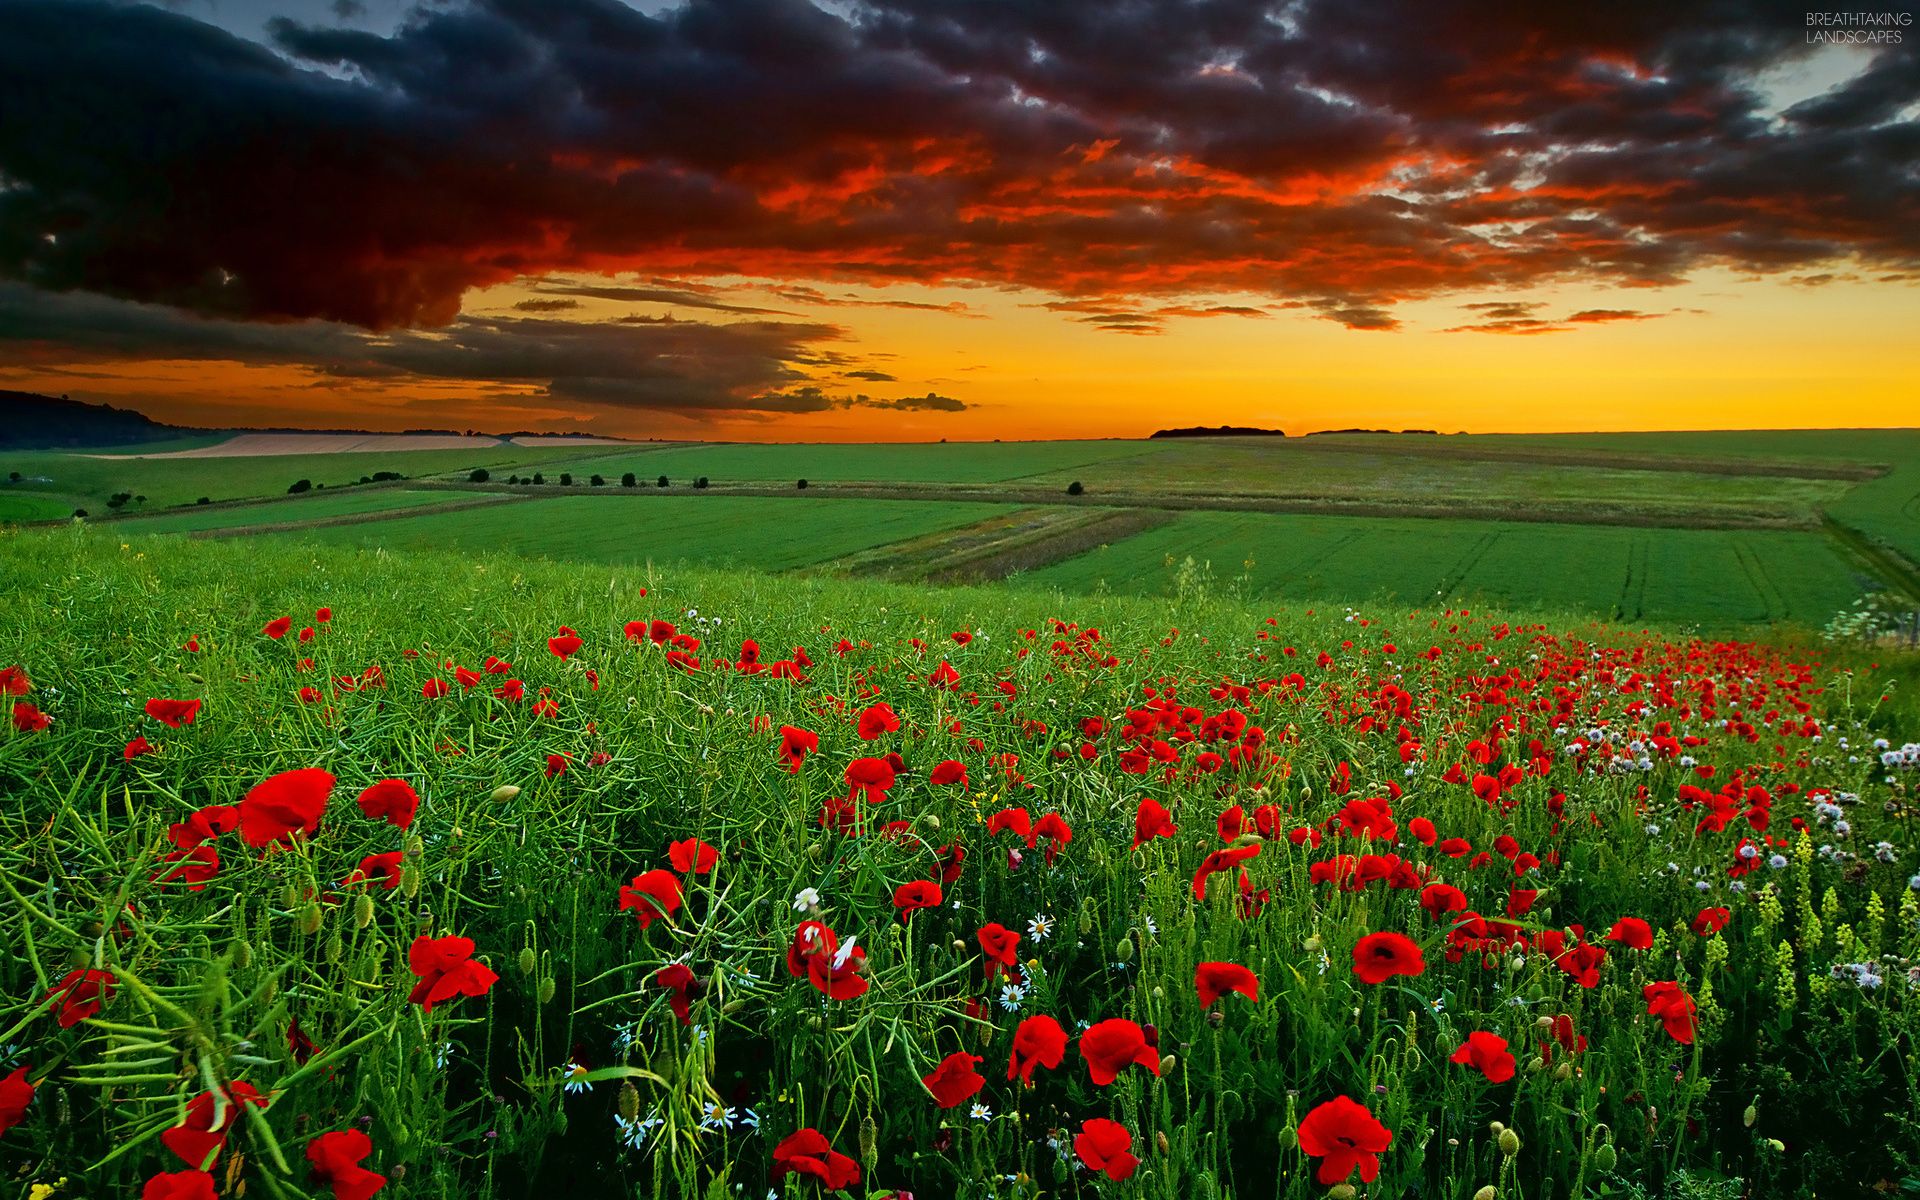 breathtaking-landscapes-08-wallpaper-poppy-field-at-sunset-2.jpg